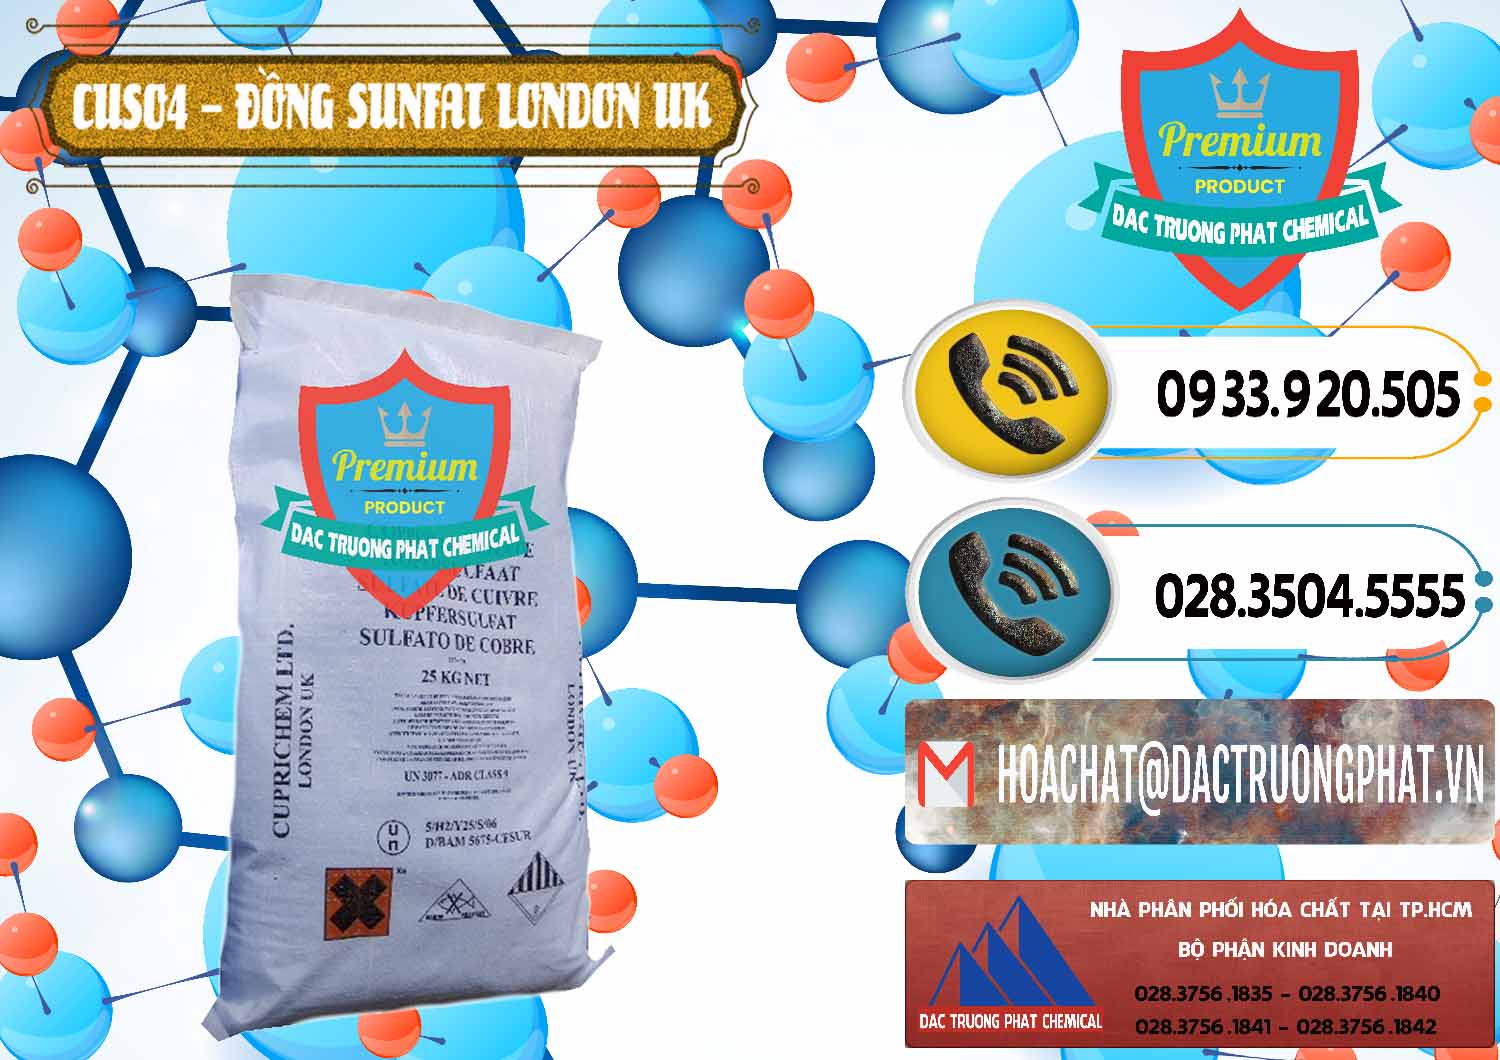 Cty chuyên phân phối - bán CuSO4 – Đồng Sunfat Anh Uk Kingdoms - 0478 - Đơn vị chuyên bán - cung cấp hóa chất tại TP.HCM - hoachatdetnhuom.vn